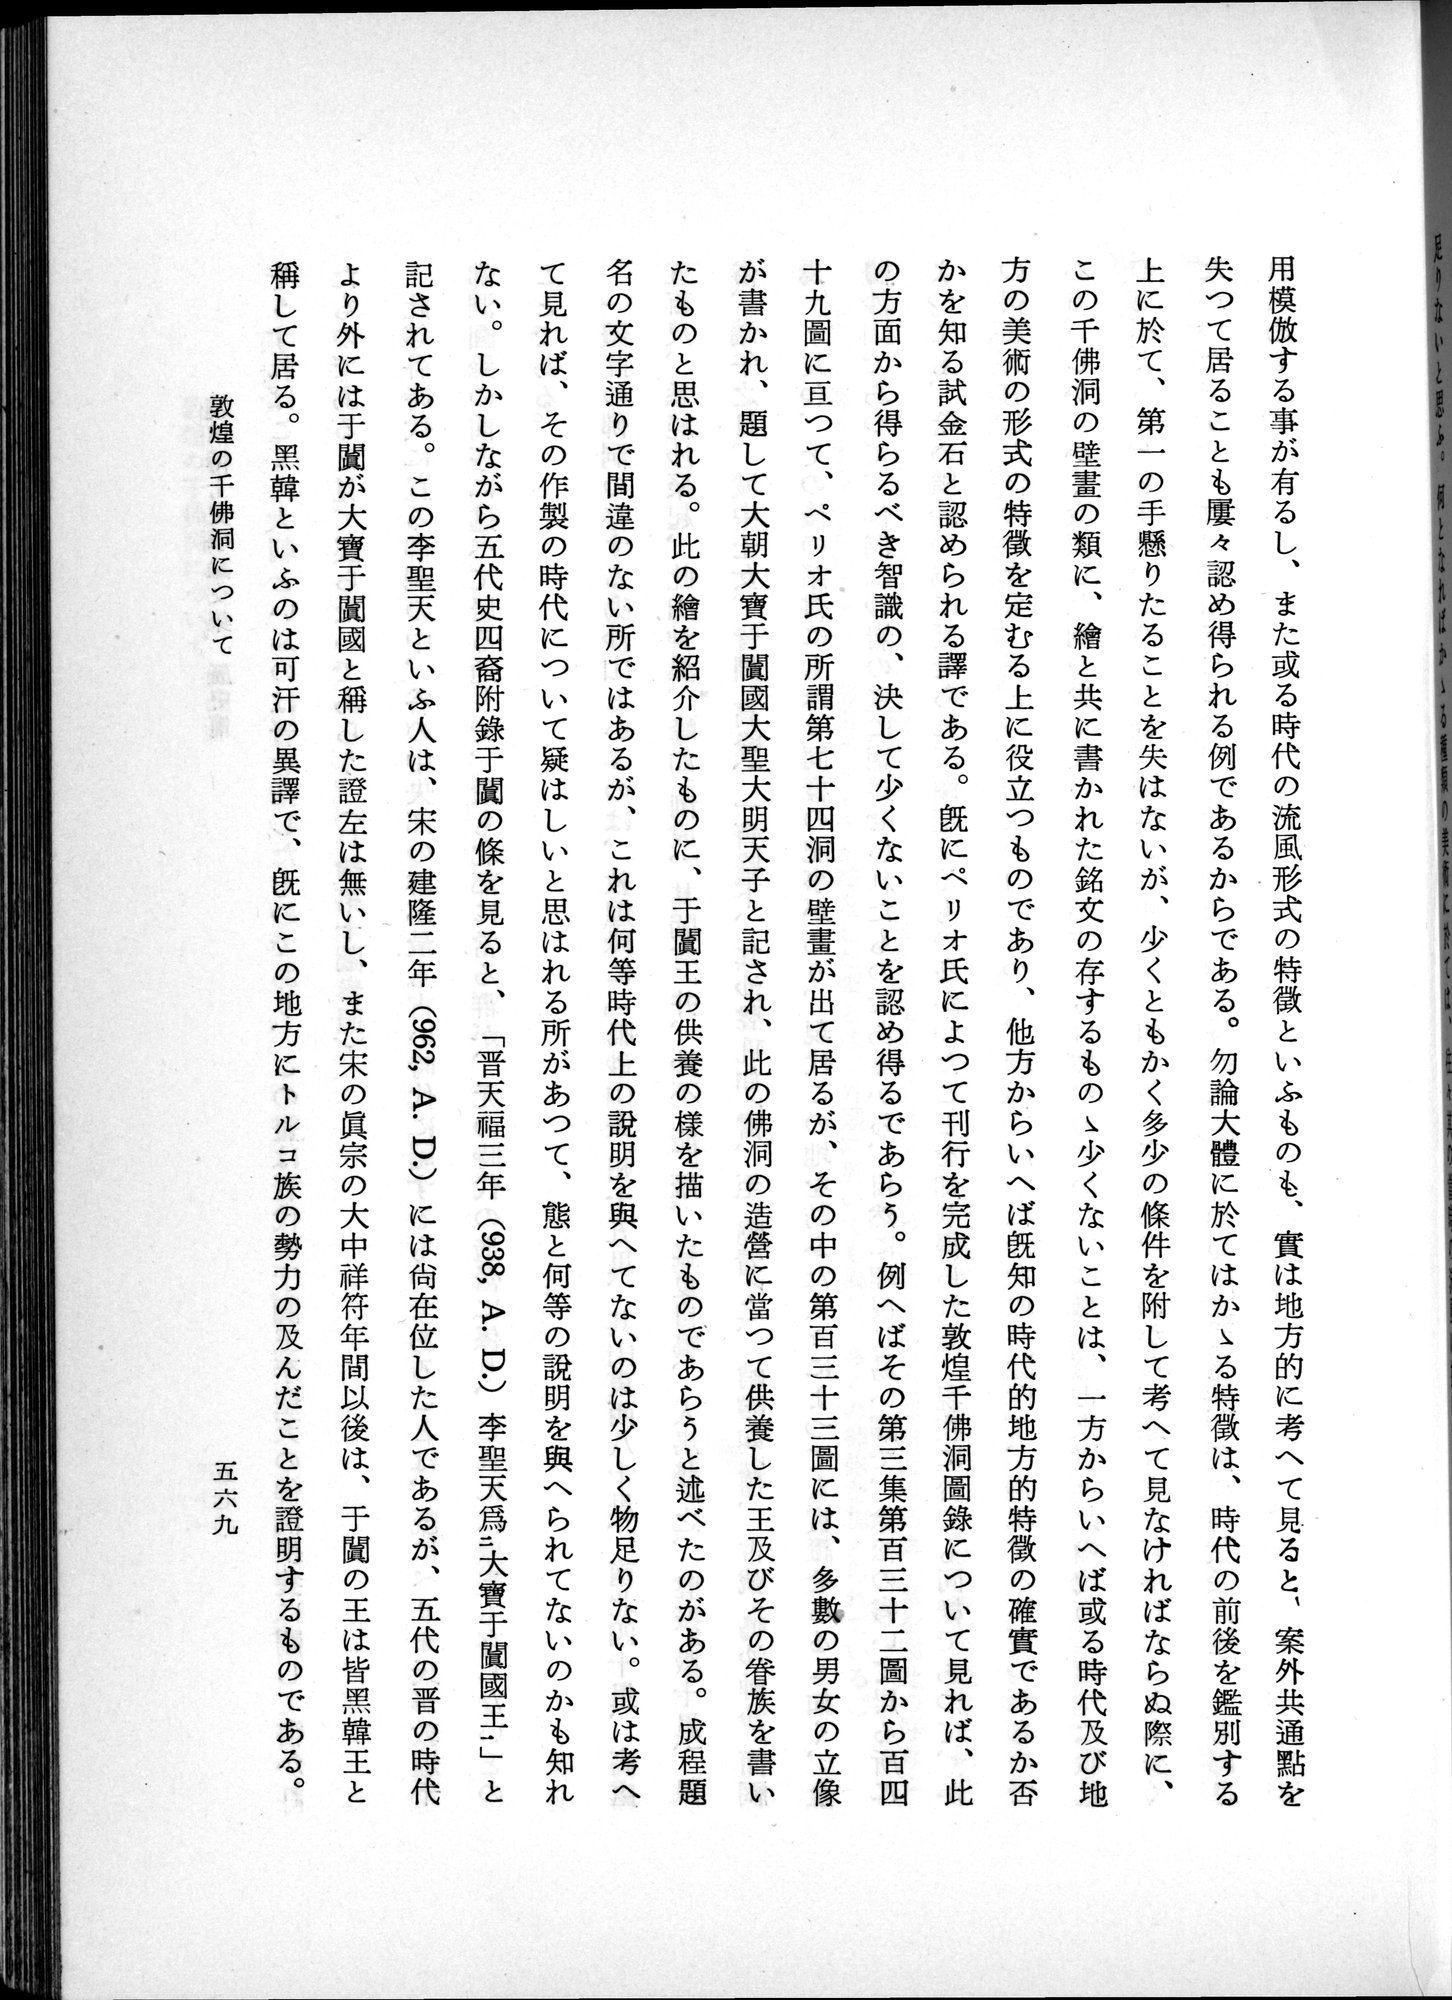 羽田博士史学論文集 : vol.1 / Page 607 (Grayscale High Resolution Image)